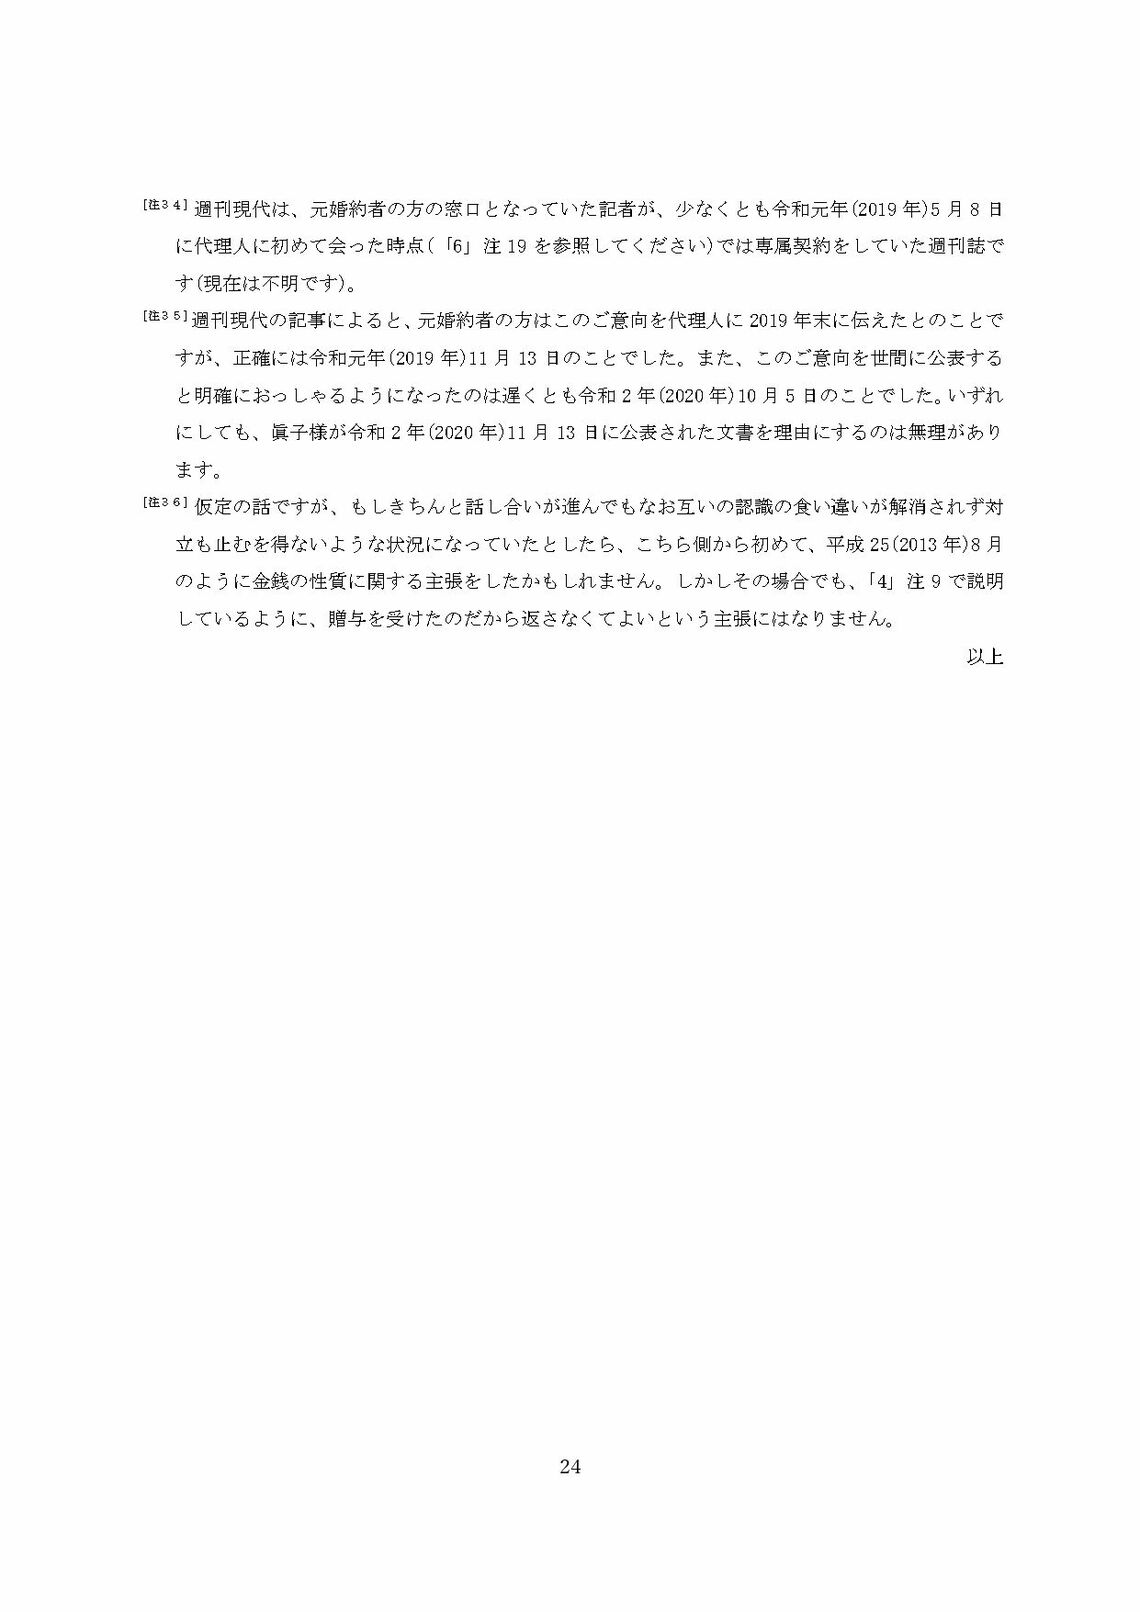 小室圭氏の代理人より届いた文書本文の脚注（24ページ目）（写真：週刊女性PRIME）